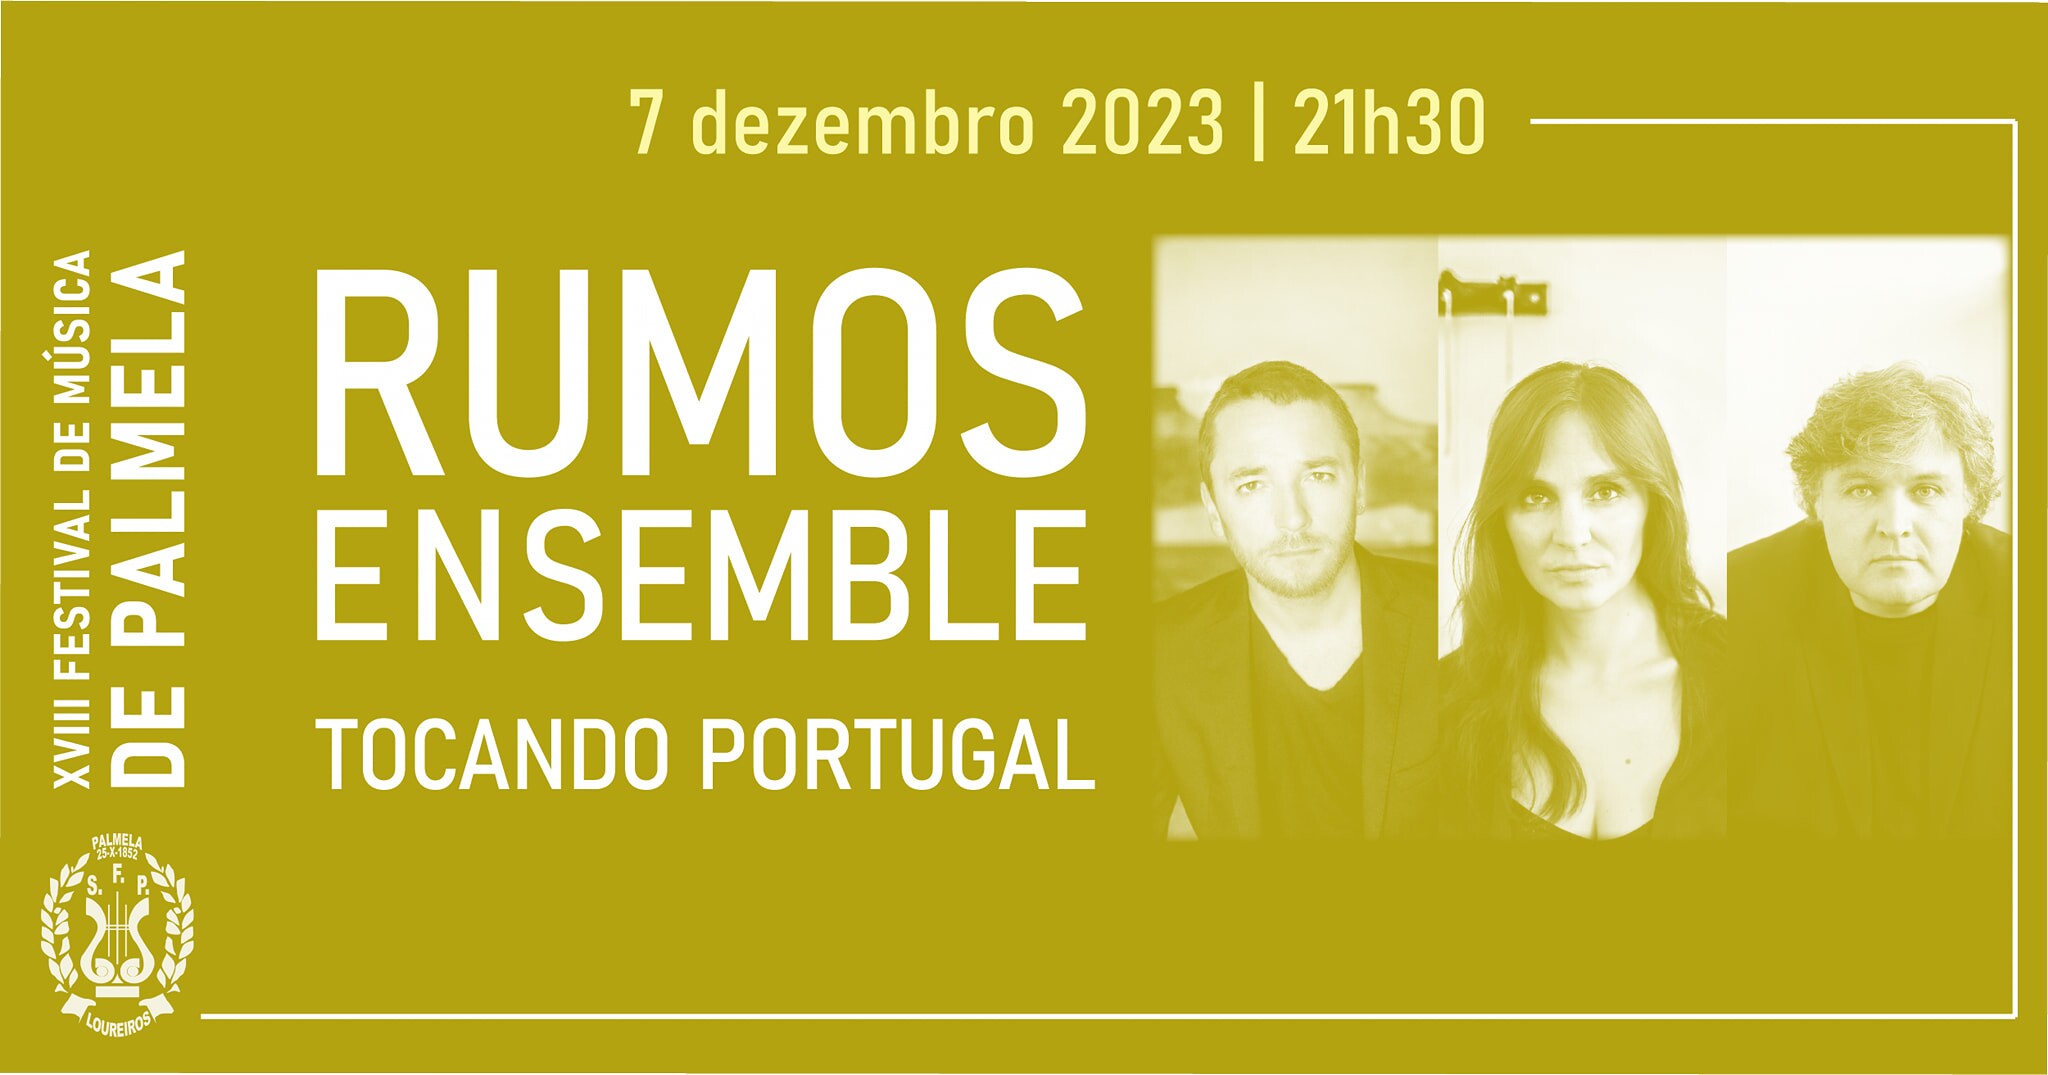 Rumos Ensemble apresenta “Tocando Portugal” em Palmela – 7 dez.